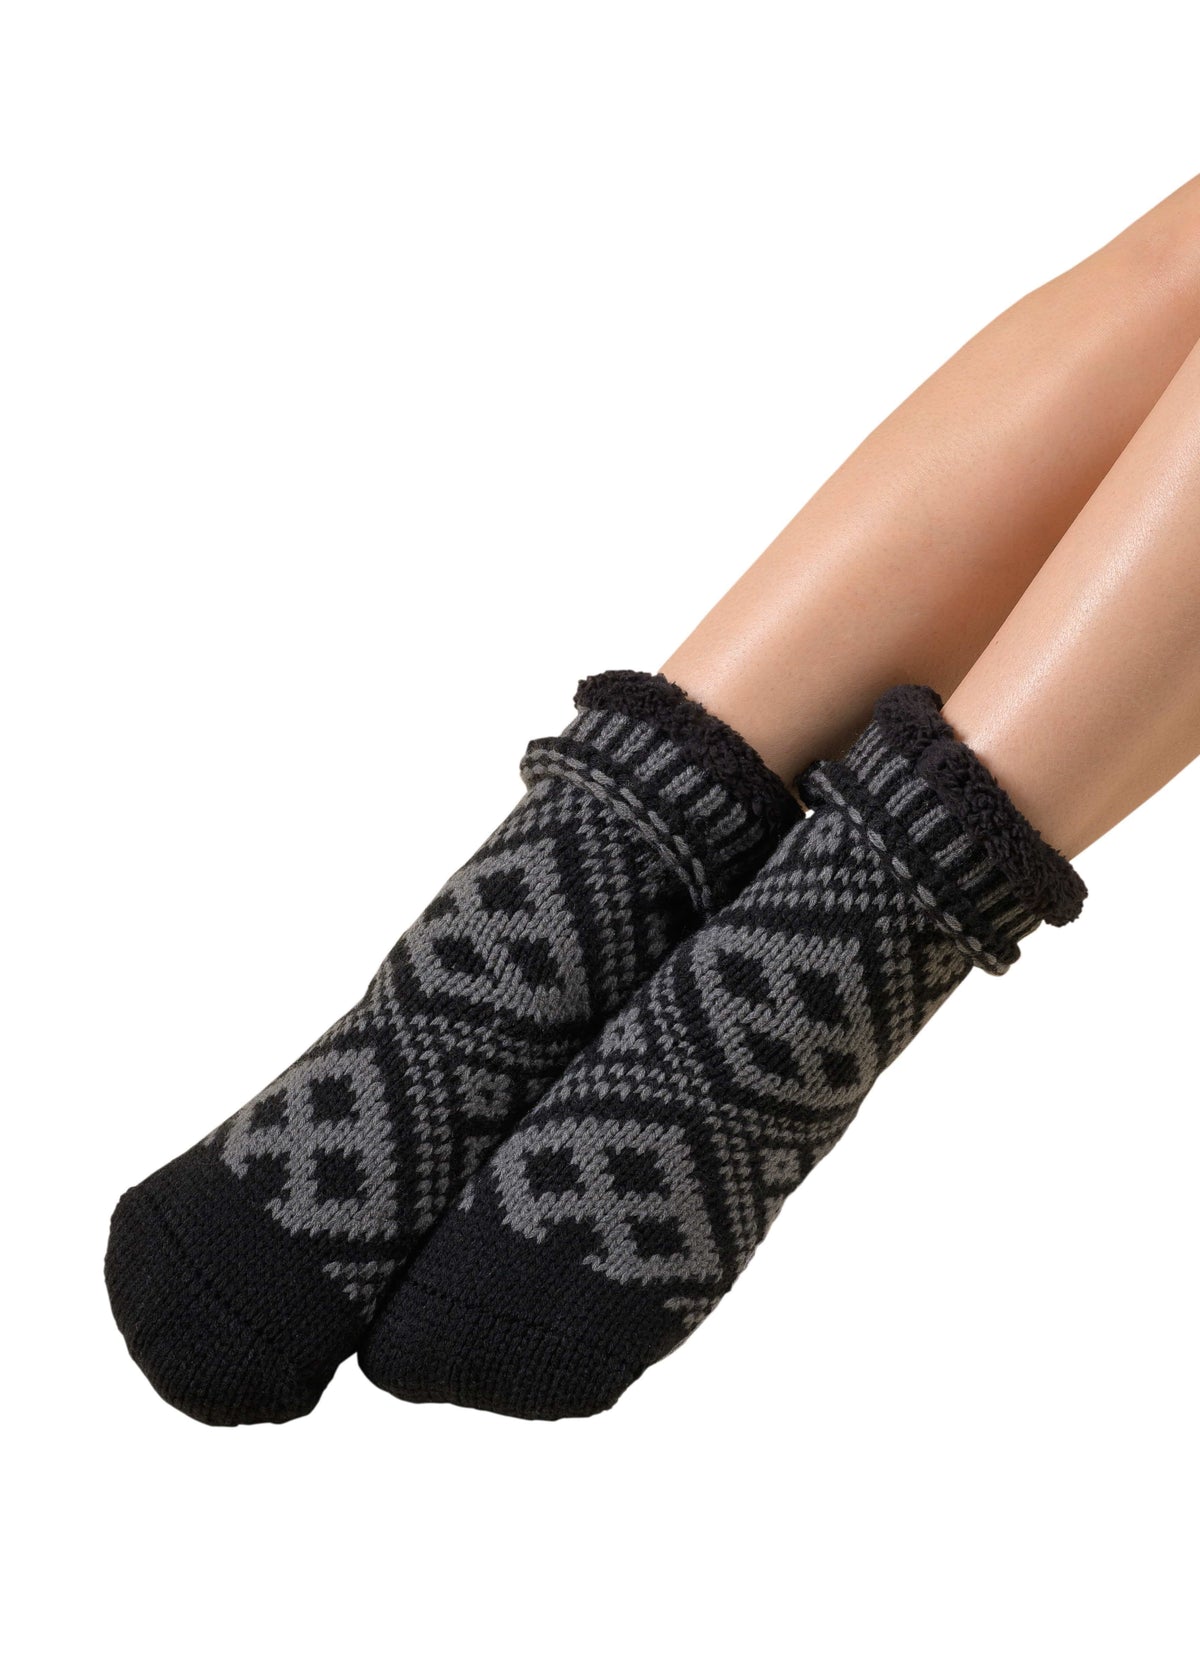 Mukluk Socks - Black - LATTELOVE Co.